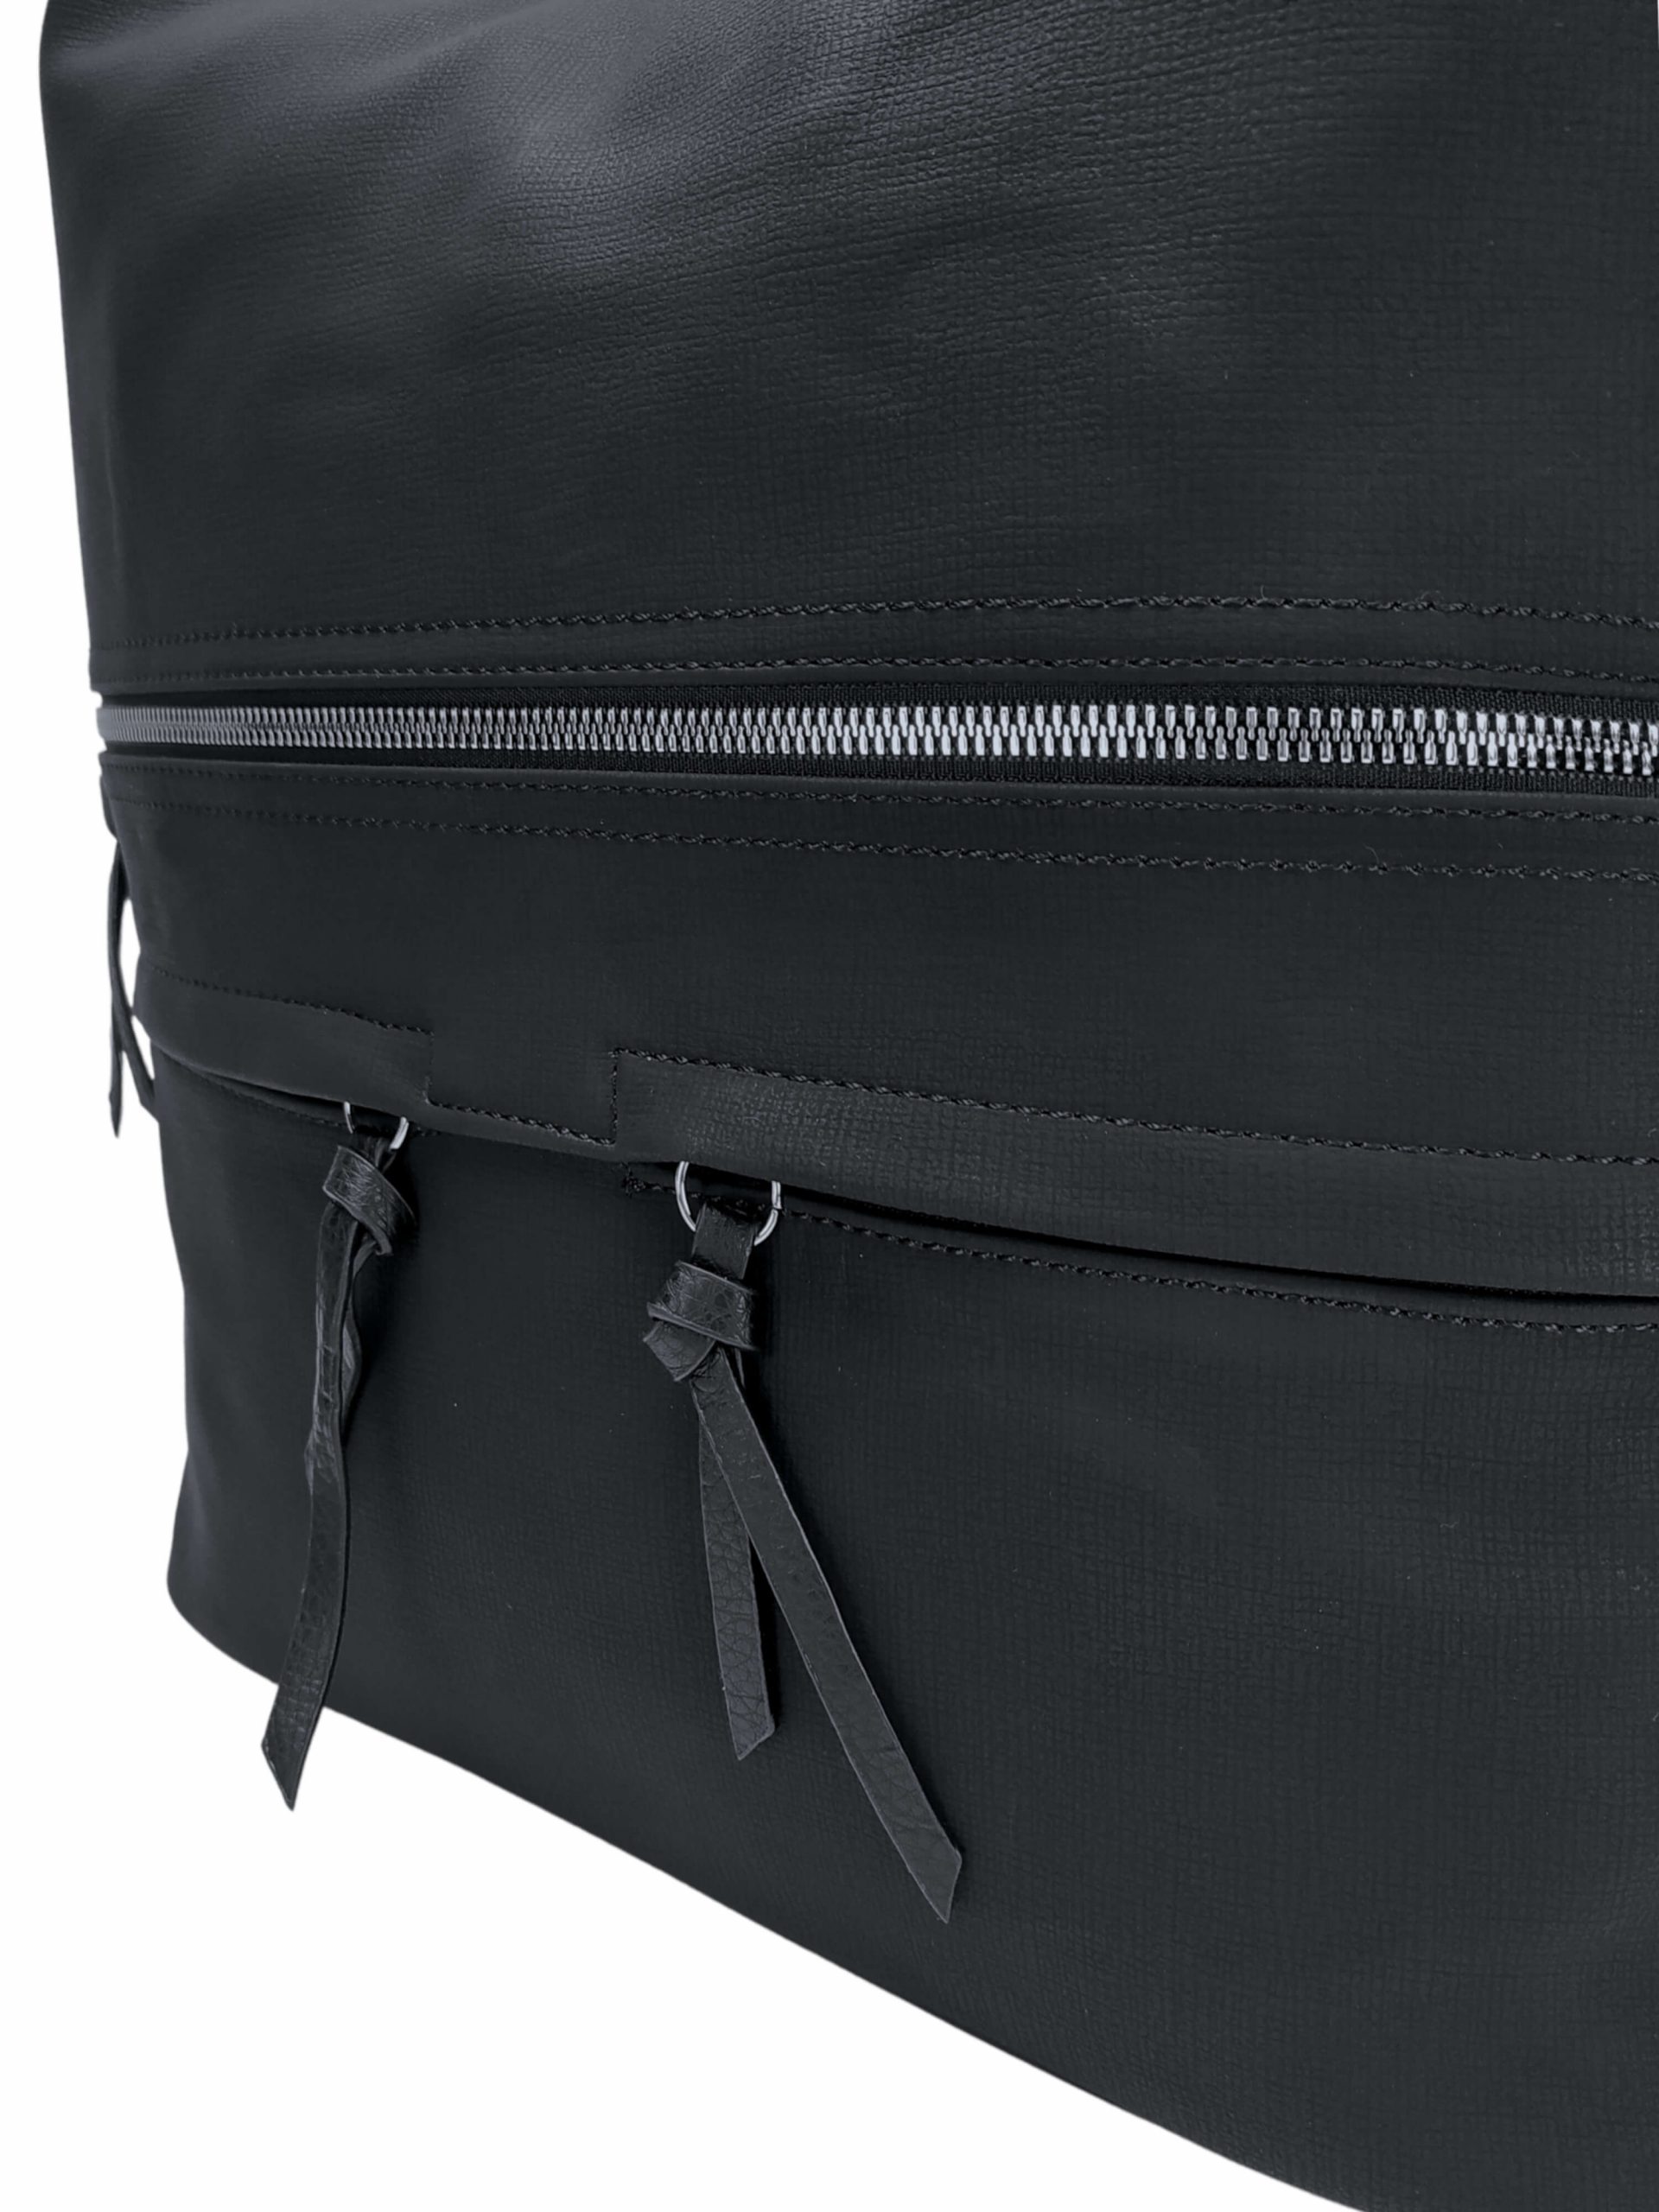 Velká černá kabelka a batoh 2v1 s kapsami, Tapple, H181175N, detail přední strany kabelky a batohu 2v1